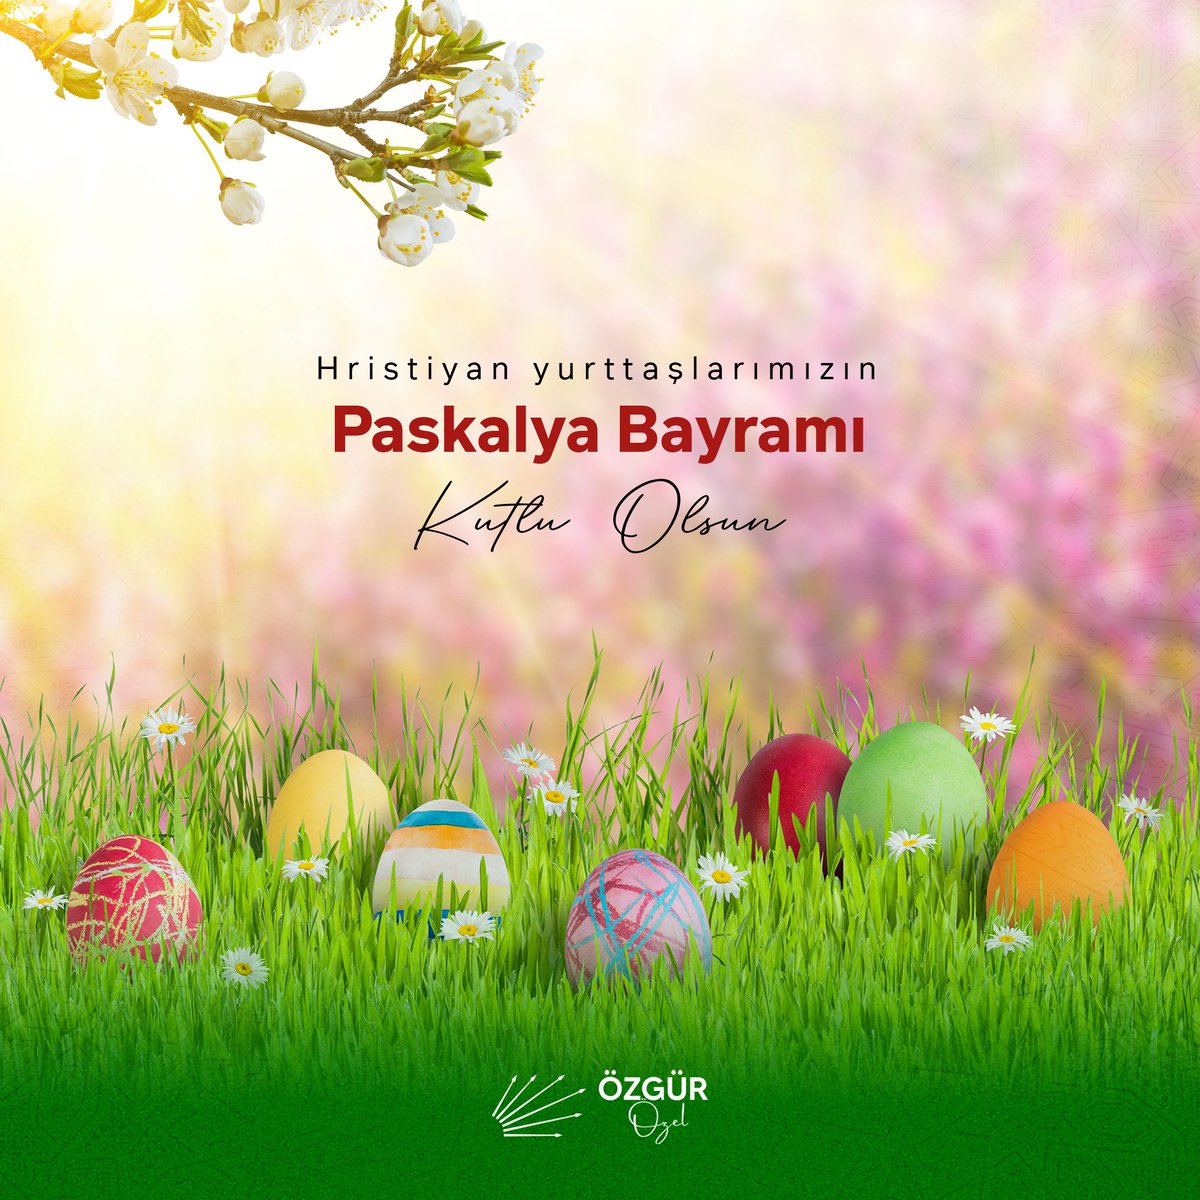 Ortodoks yurttaşlarımızın Paskalya Bayramı’nı kutluyor, Paskalya’nın tüm dünyaya huzur ve barış getirmesini diliyorum.